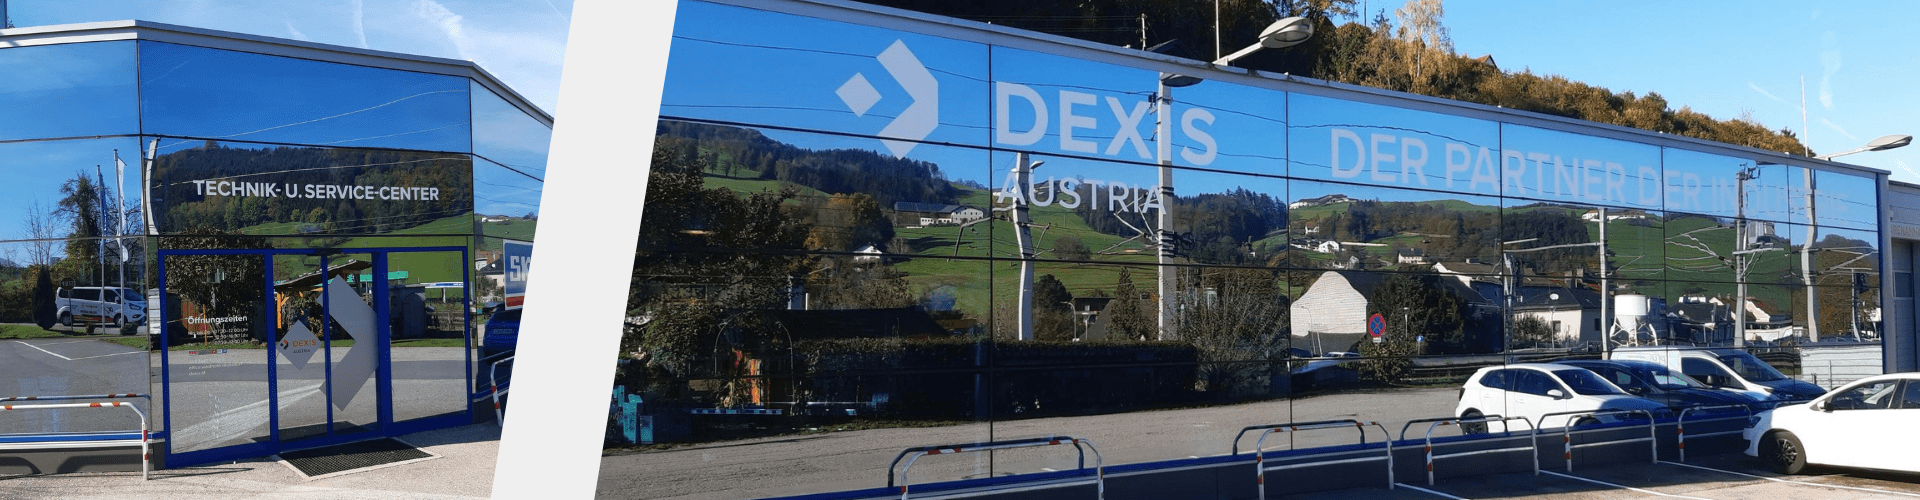 DEXIS Austria Waidhofen/Ybbs | Top-Sortiment, Top-Beratung